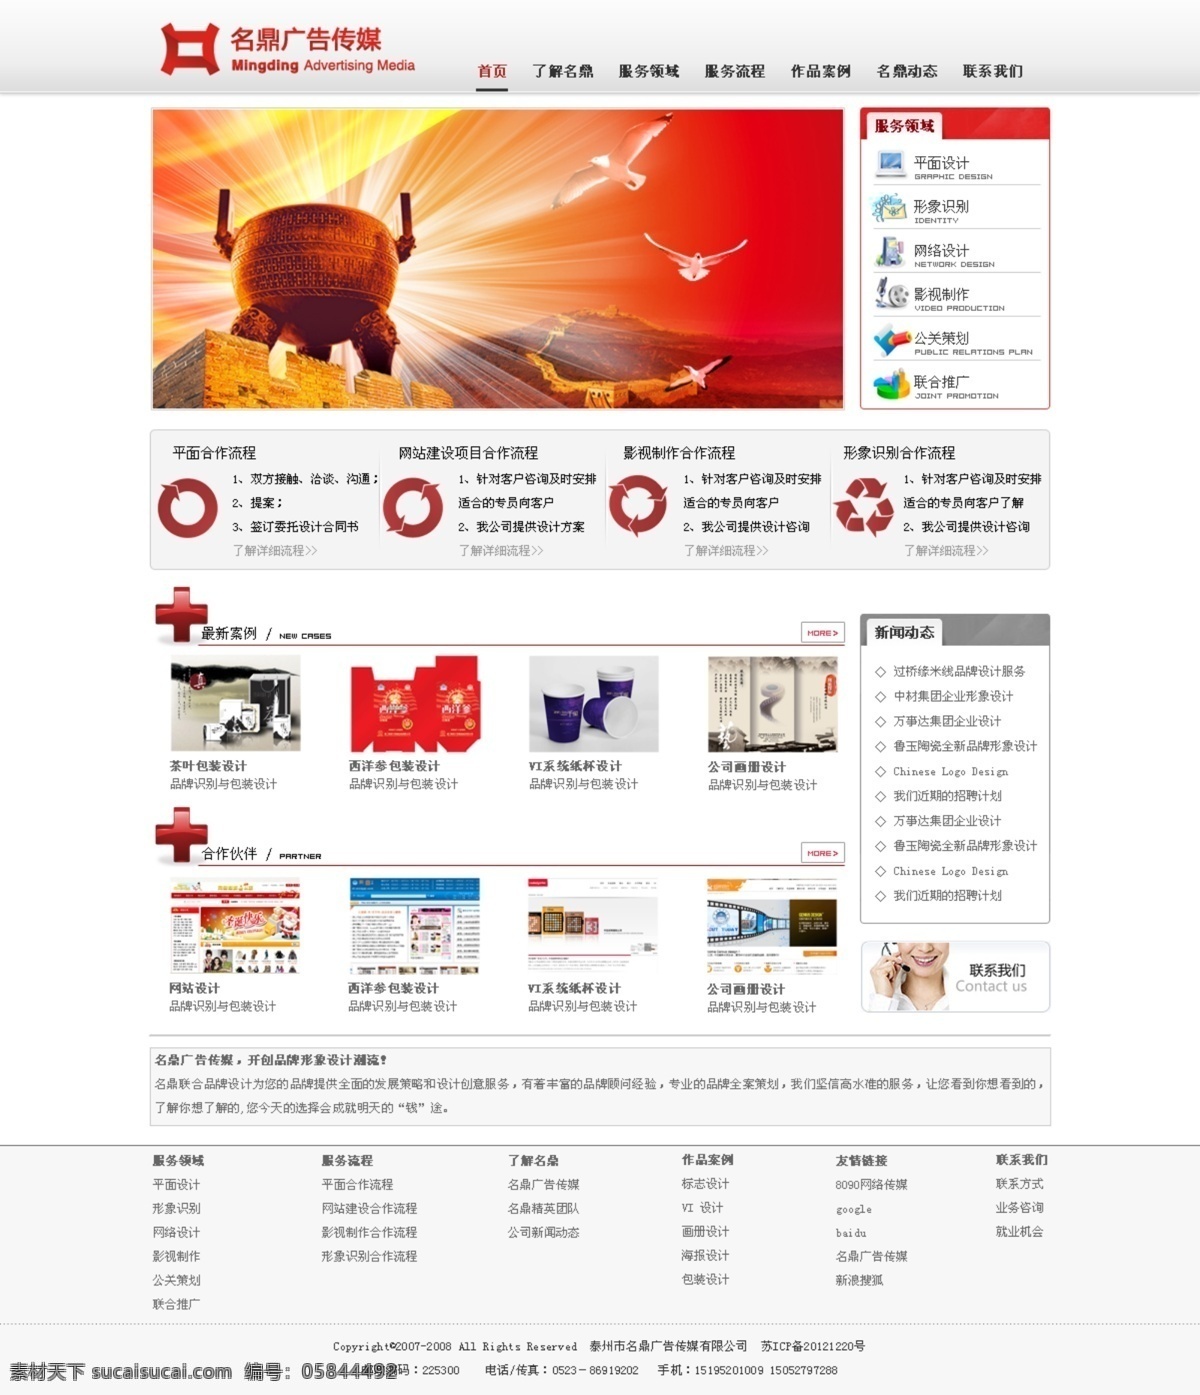 红色 广告 网站首页 psd源文件 广告设计网站 红色网站 企业网站 原创设计 原创网页设计